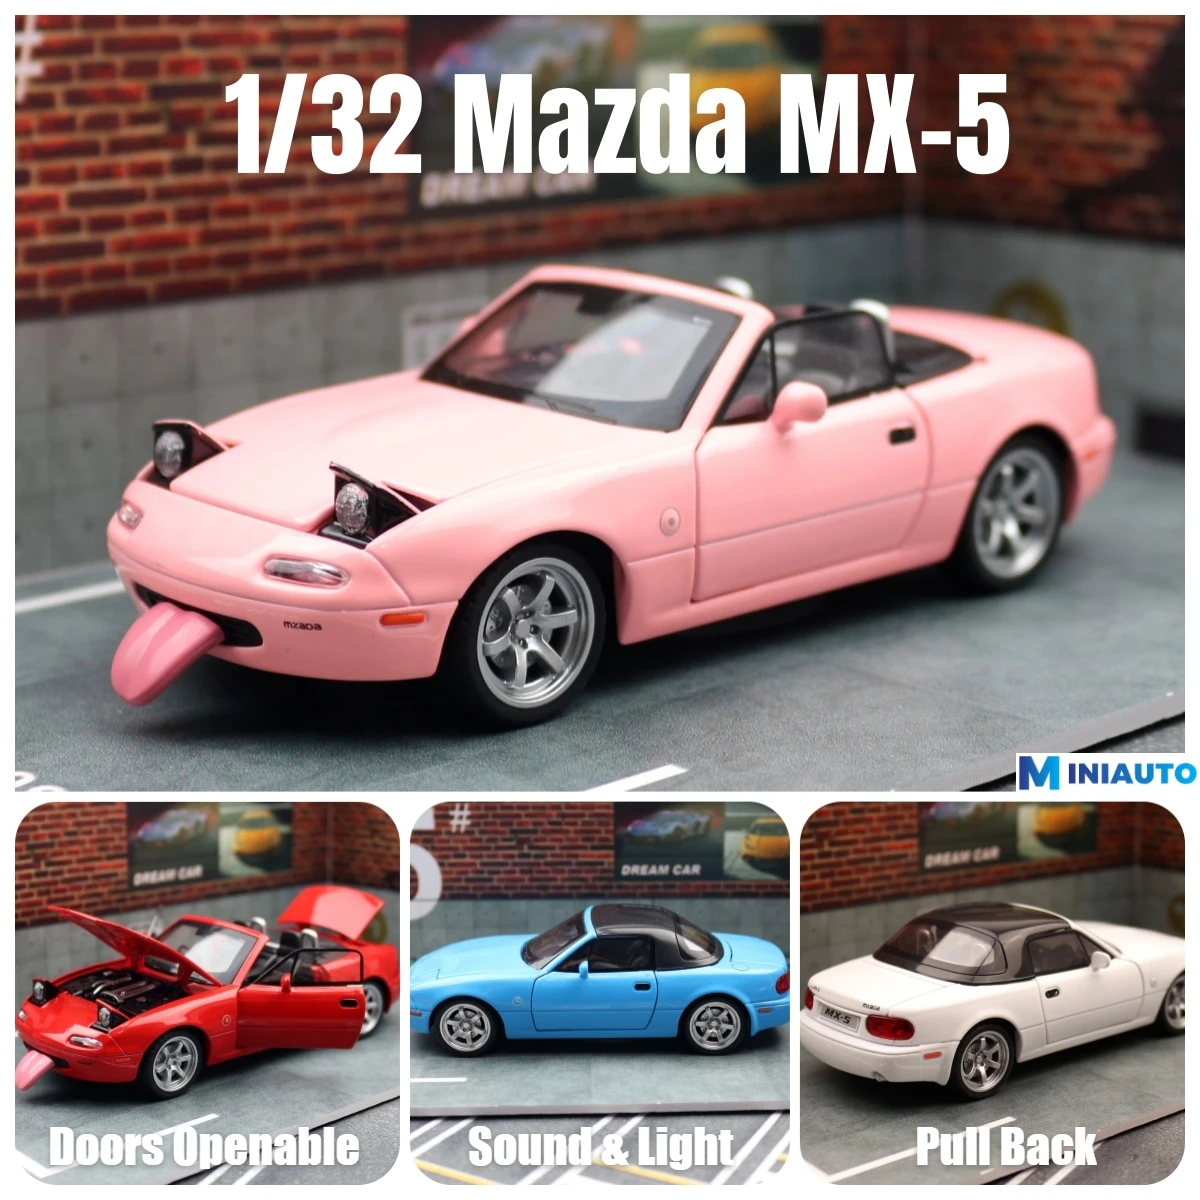 마쓰다 MX-5 미니어처 다이캐스트 MX5 로드스터 장난감 자동차 모델, 사운드 및 라이트 도어, 오픈 가능 컬렉션, 어린이 소년, 어린이 선물, 1/32